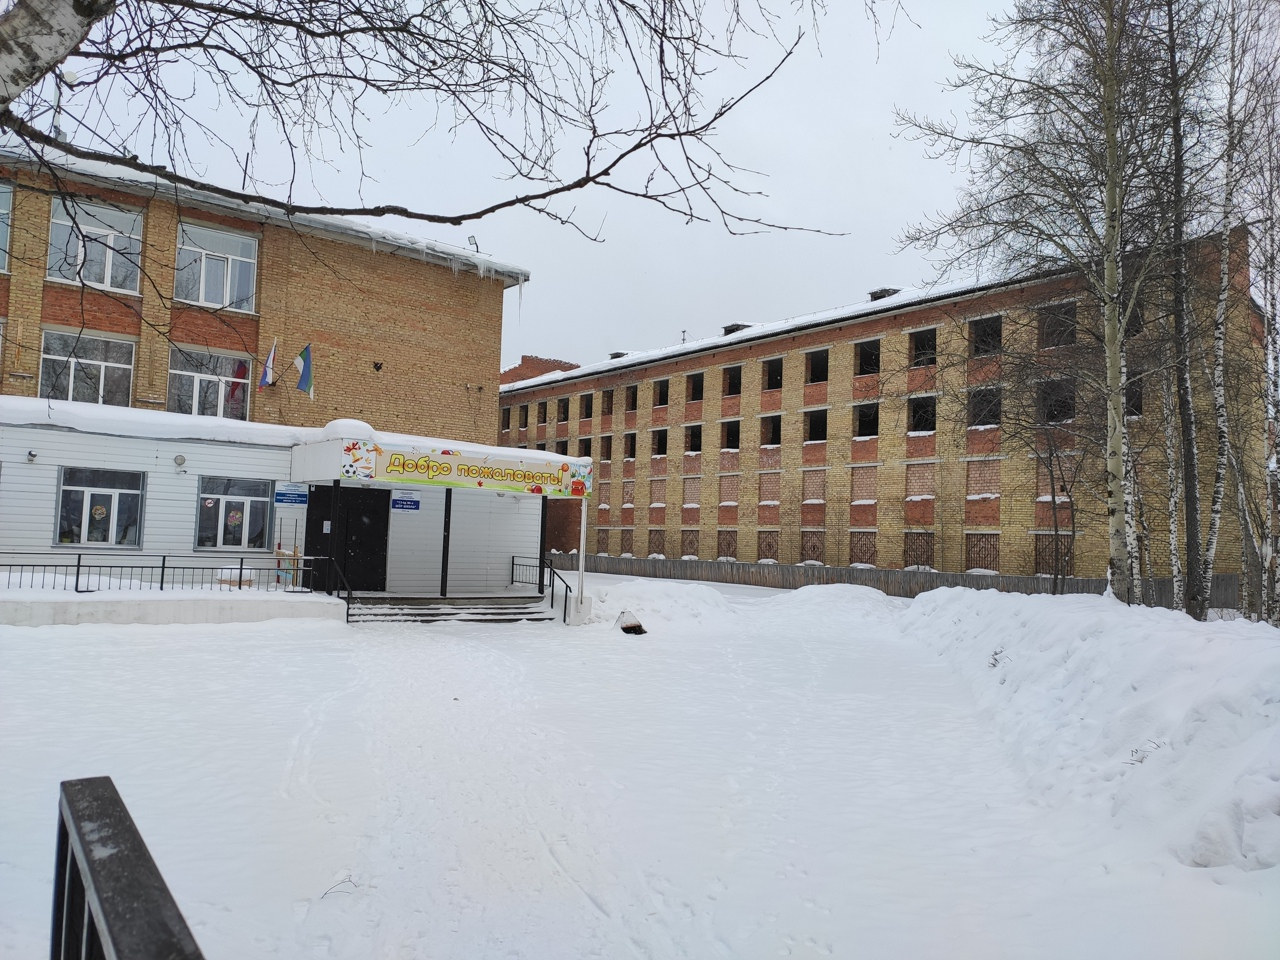 Ухтинские мамочки "снесли" здание, где собираются школьники, бомжи и наркоманы